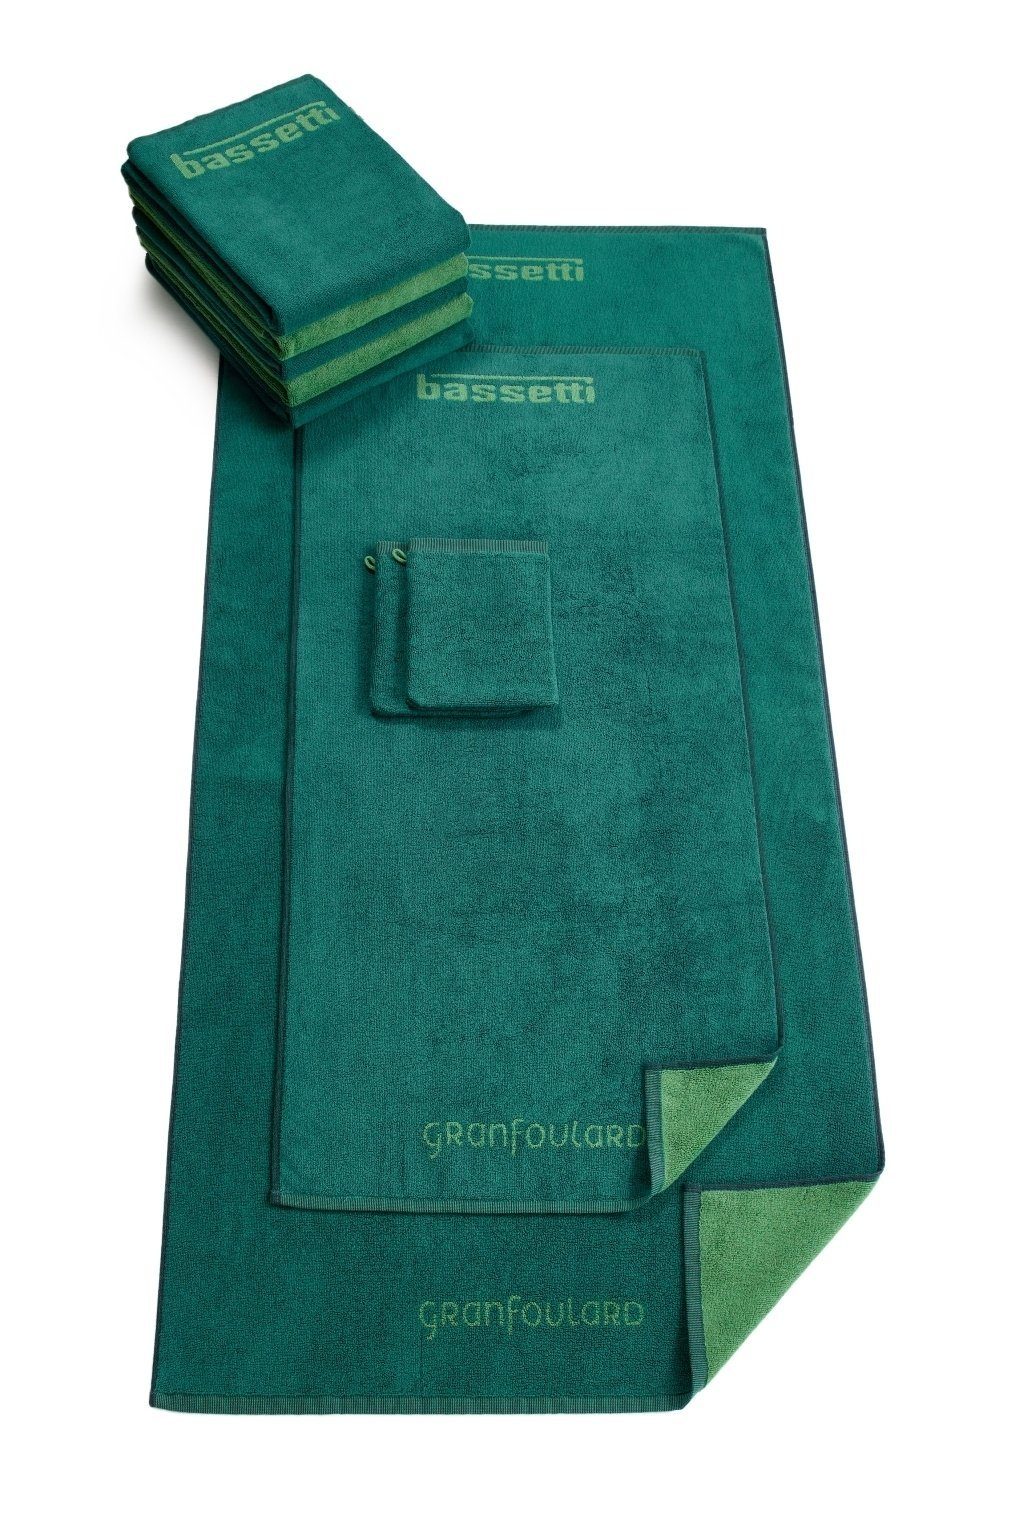 SHADES, Bassetti Waschhandschuh grün mit Wendedesign